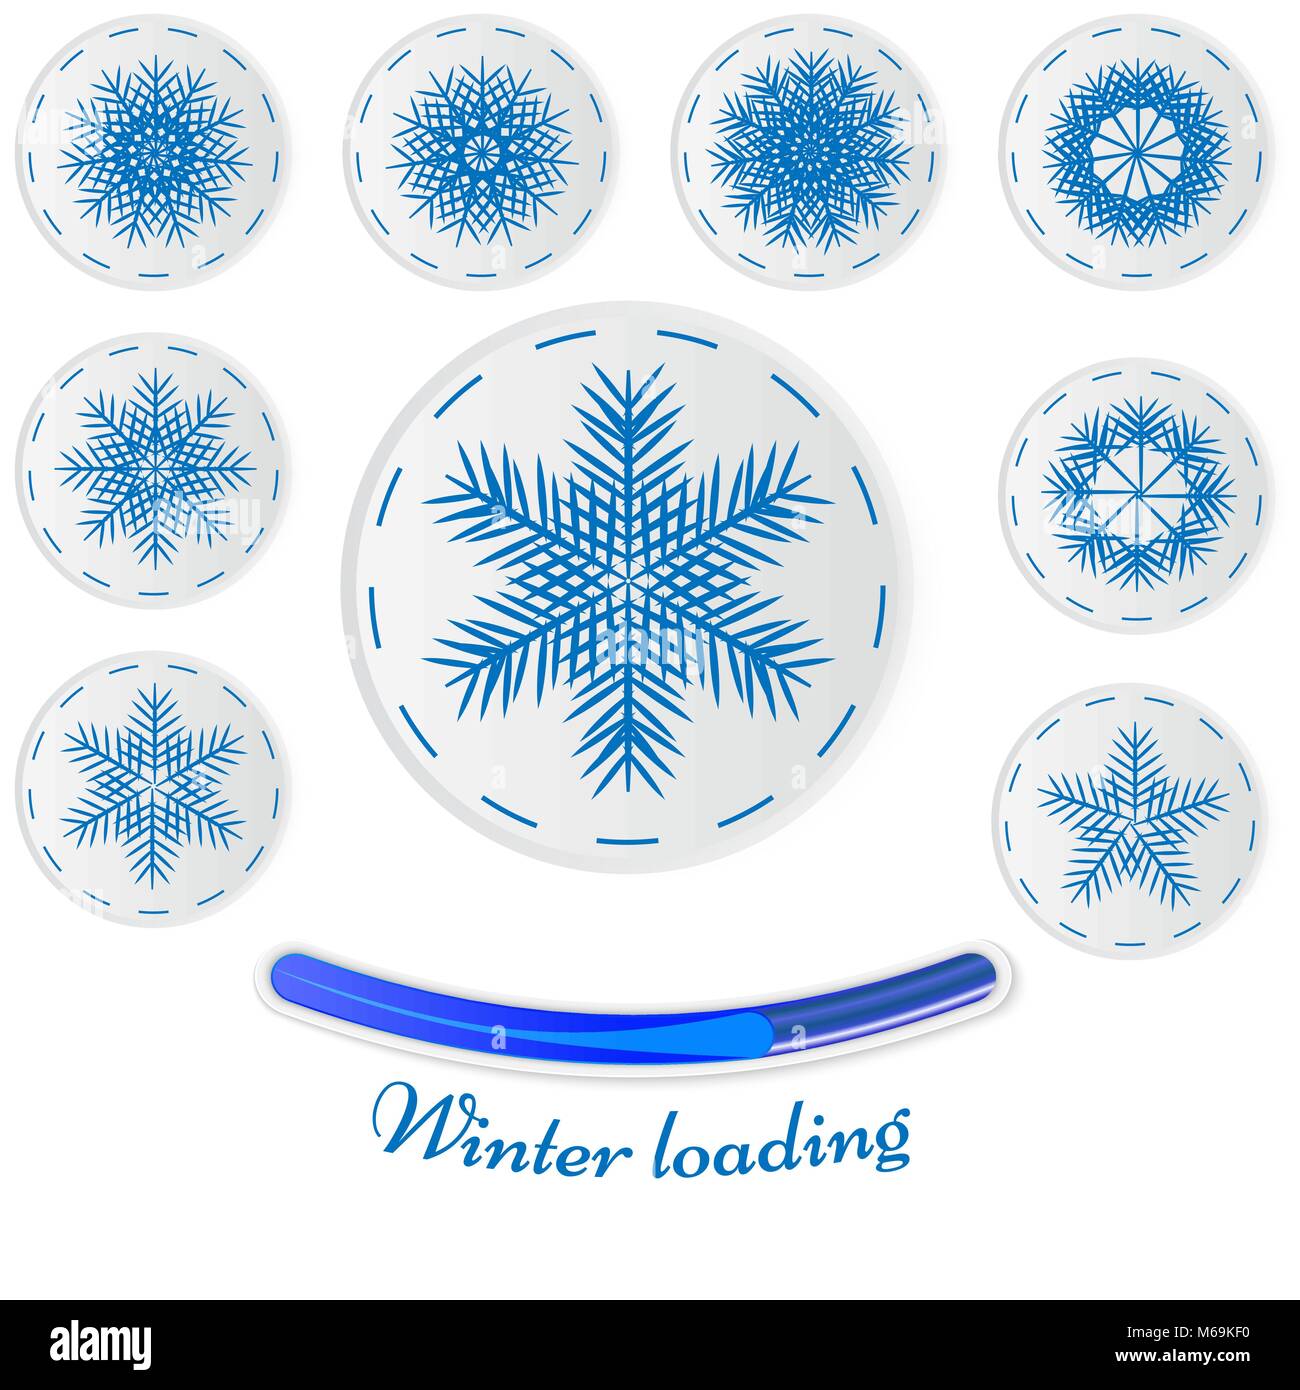 Pegatinas de copo de nieve. Snowflake juego invierno ilustración vectorial, el concepto de carga de invierno, desarrolla las habilidades motoras en niños pequeños Ilustración del Vector